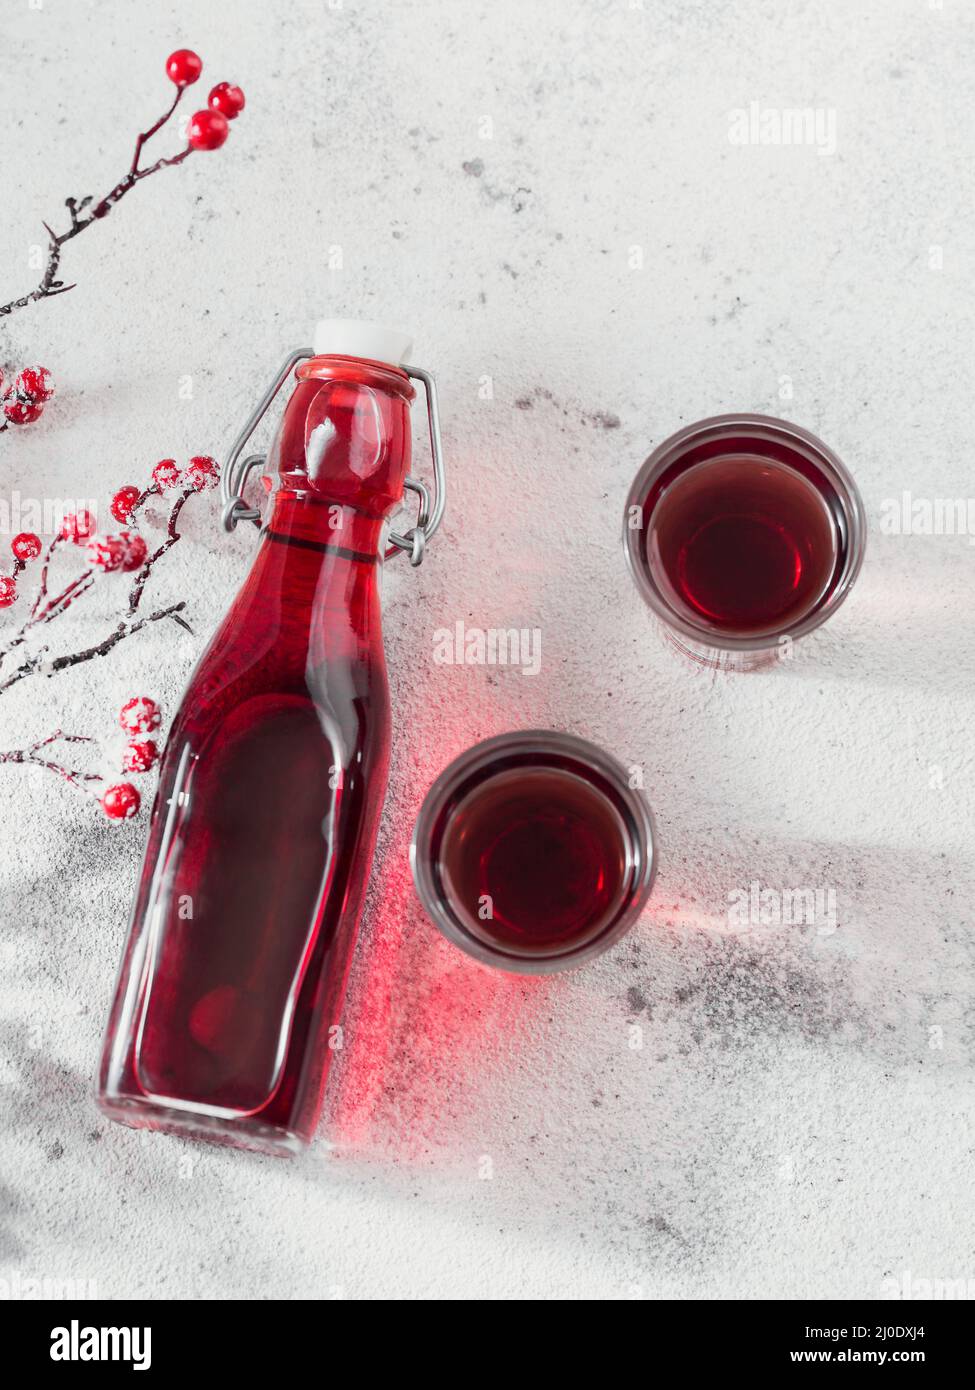 Hausgemachter infundierten Wodka, Tinktur oder Likör aus roter Kirsche auf weißem Hintergrund. Berry alkoholische Getränke Konzept. Stockfoto